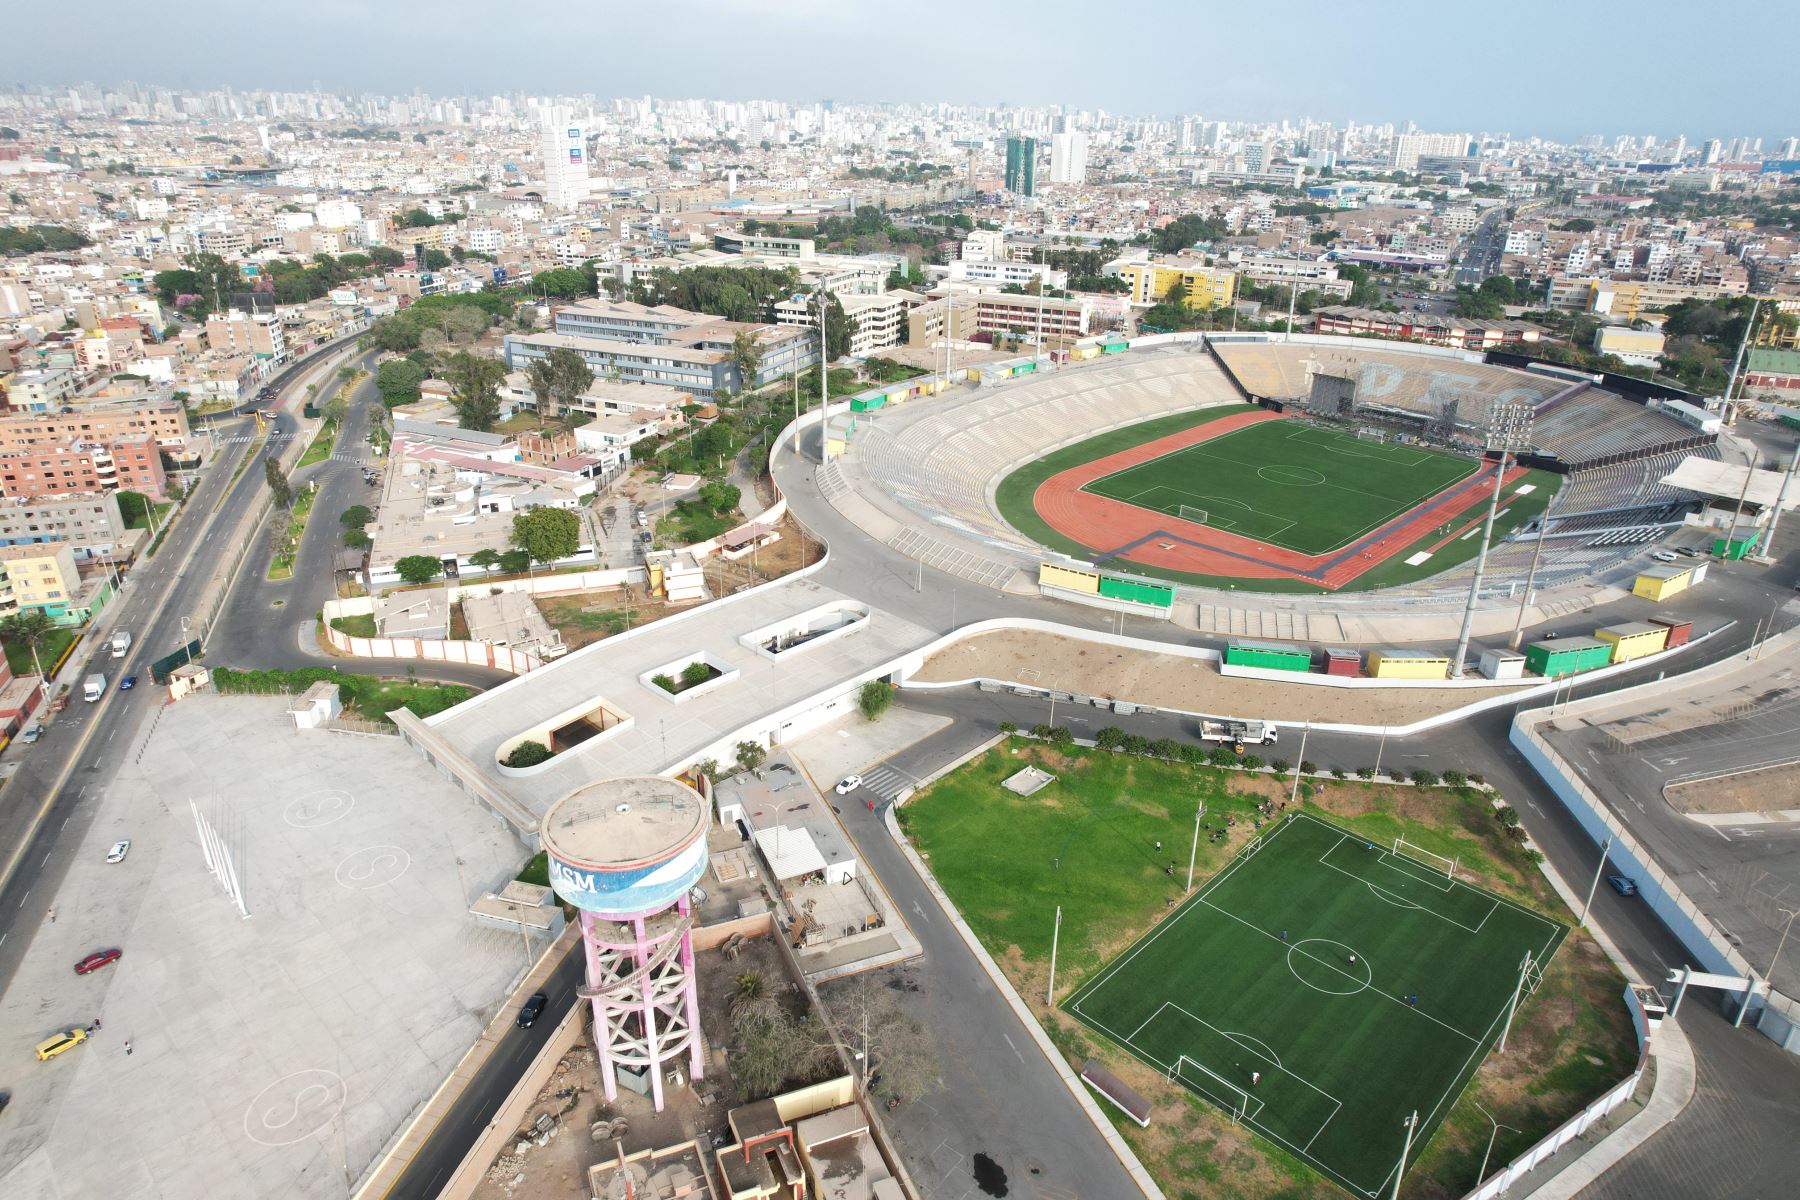 Vista aérea de la ciudad universitaria de la Universidad San Marcos, decana de América. Foto: ANDINA/Daniel Bracamonte